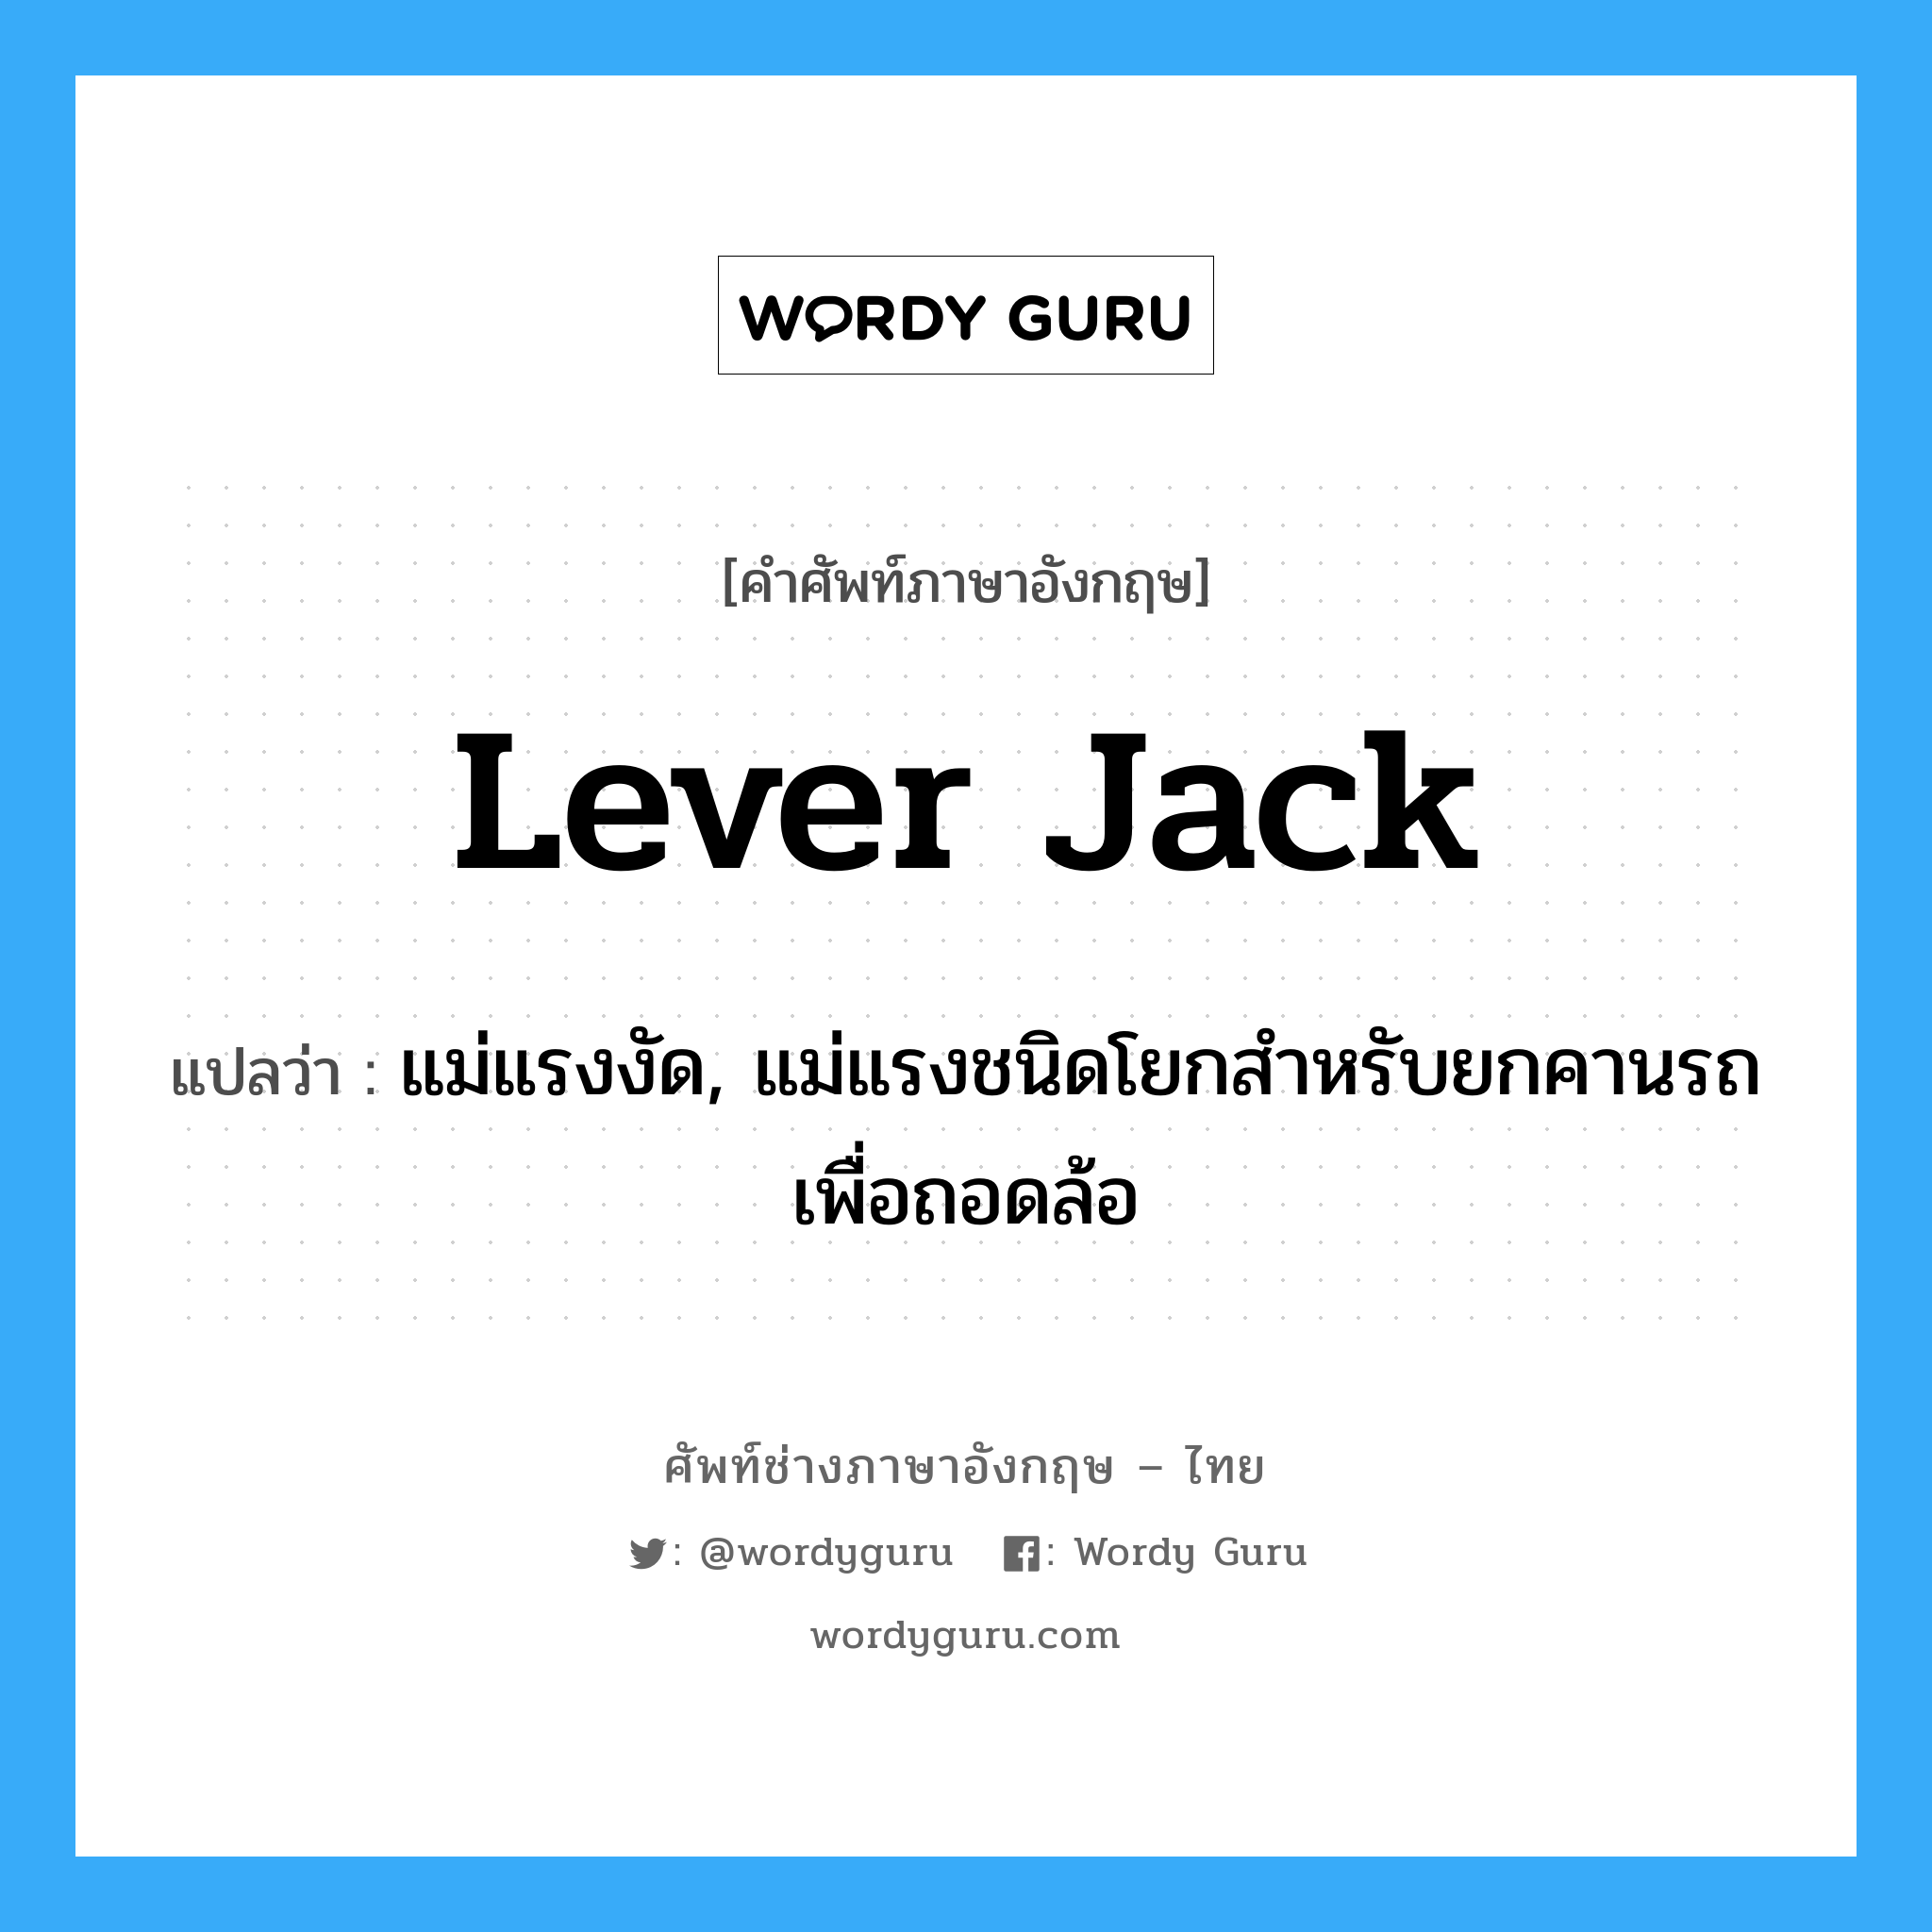 lever jack แปลว่า?, คำศัพท์ช่างภาษาอังกฤษ - ไทย lever jack คำศัพท์ภาษาอังกฤษ lever jack แปลว่า แม่แรงงัด, แม่แรงชนิดโยกสำหรับยกคานรถเพื่อถอดล้อ